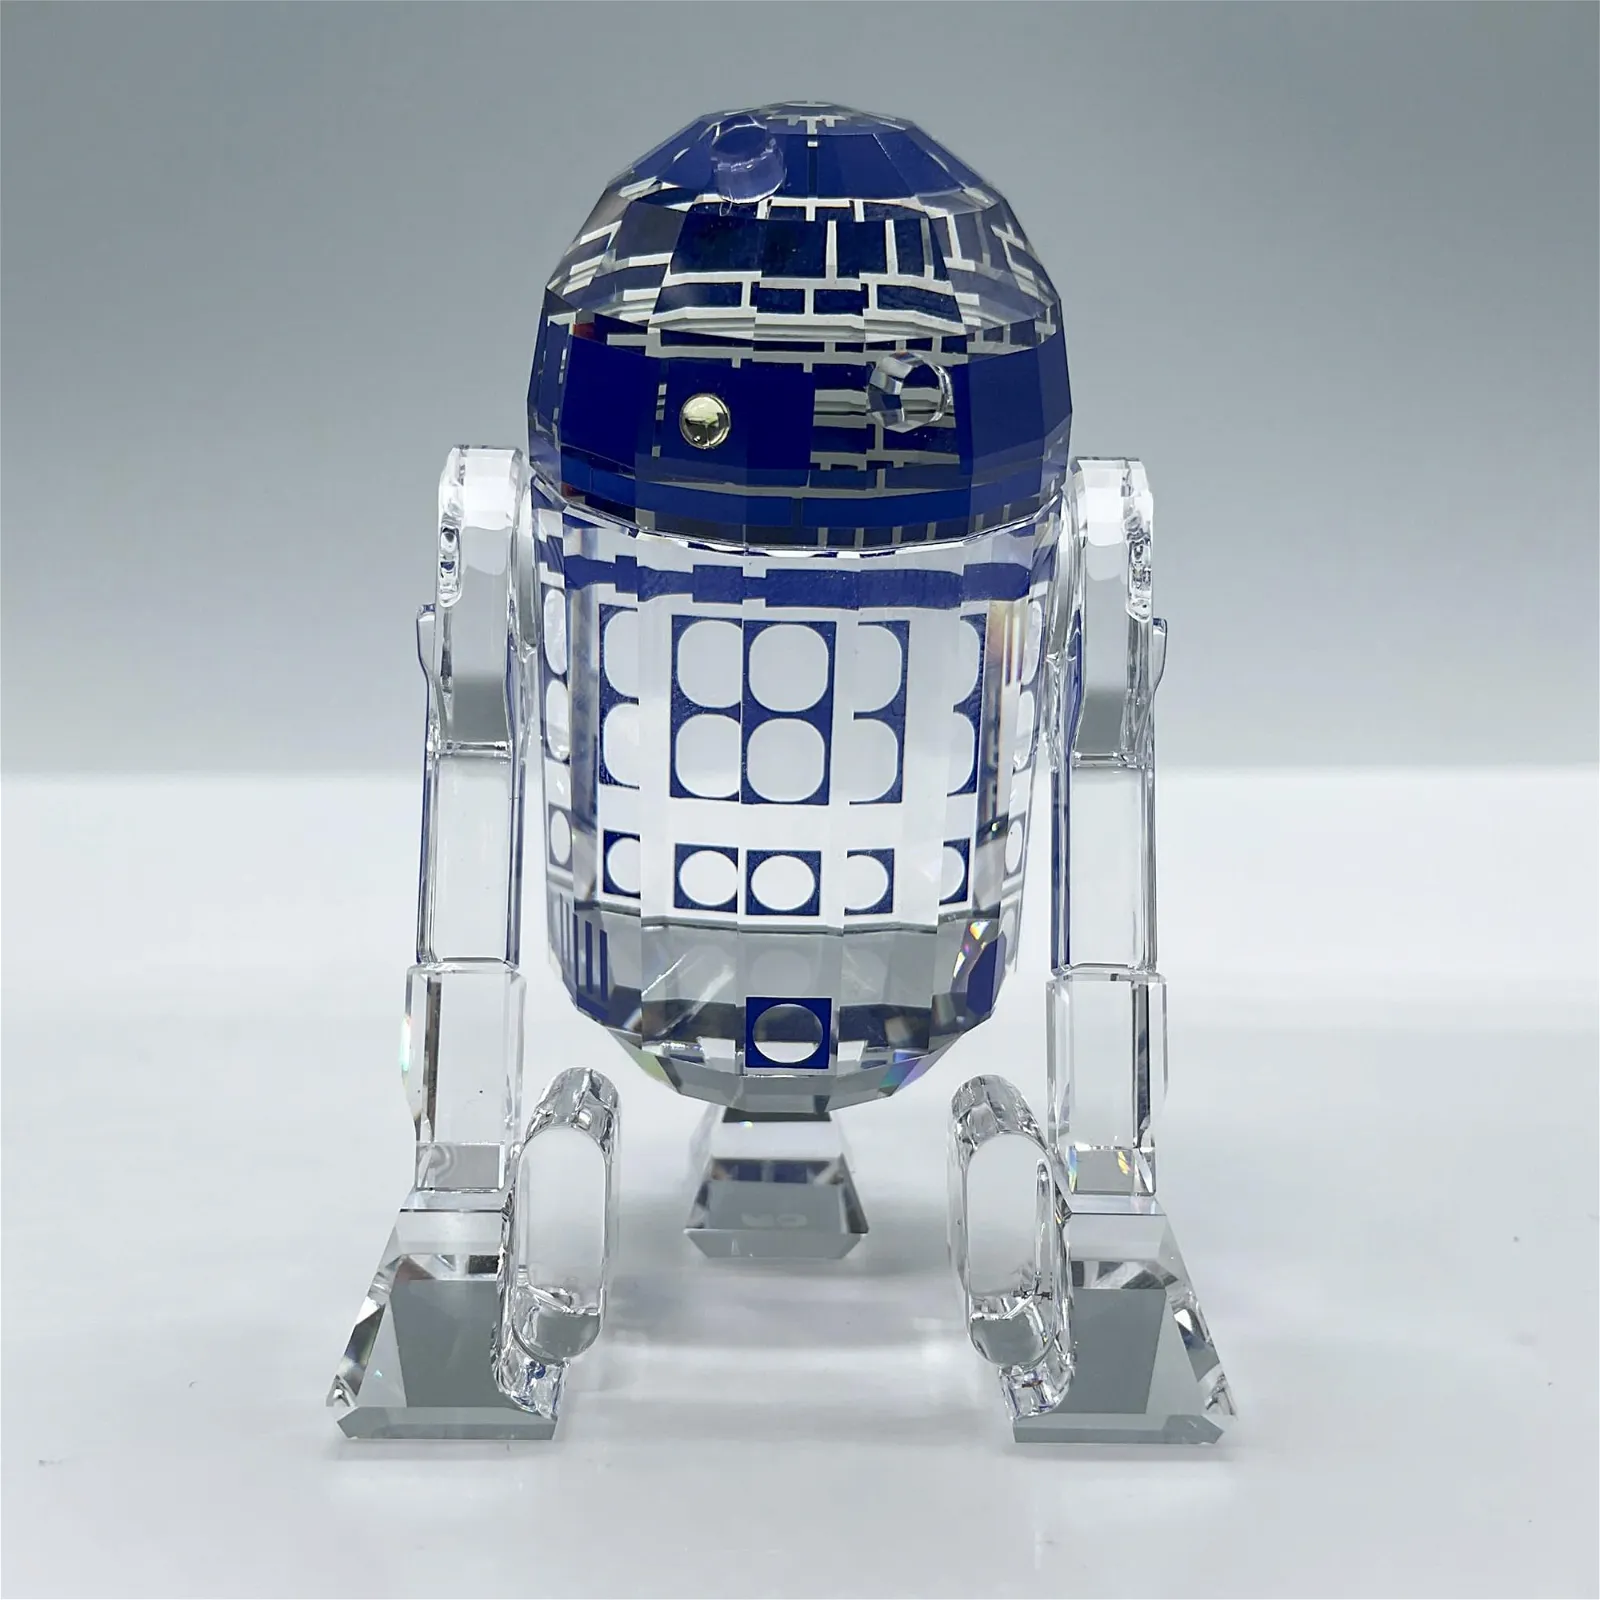 Rare Swarovski Crystal Figurine, Star Wars R2-D2